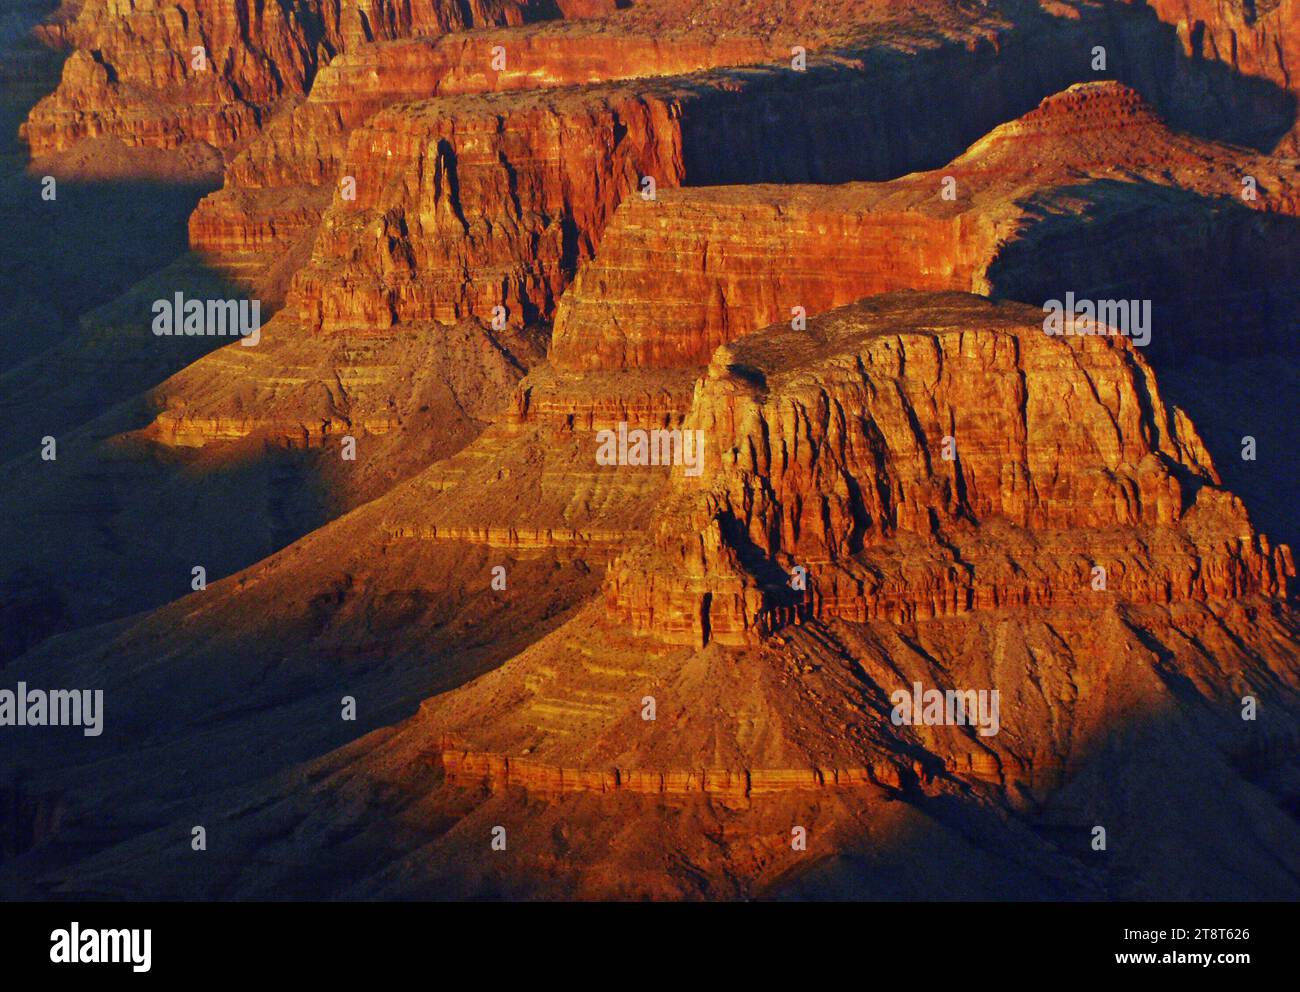 Der Grand Canyon in Arizona ist eine natürliche Formation, die sich durch mehrschichtige rote Gesteinsbänder auszeichnet und Millionen von Jahren geologischer Geschichte im Querschnitt enthüllt. Der Canyon ist riesig und hat einen Durchmesser von durchschnittlich 16 km und eine Meile tief auf seiner Länge von 277 km. Ein Großteil der Gegend ist ein Nationalpark mit Wildwasserstromschnellen des Colorado River und einer atemberaubenden Aussicht Stockfoto